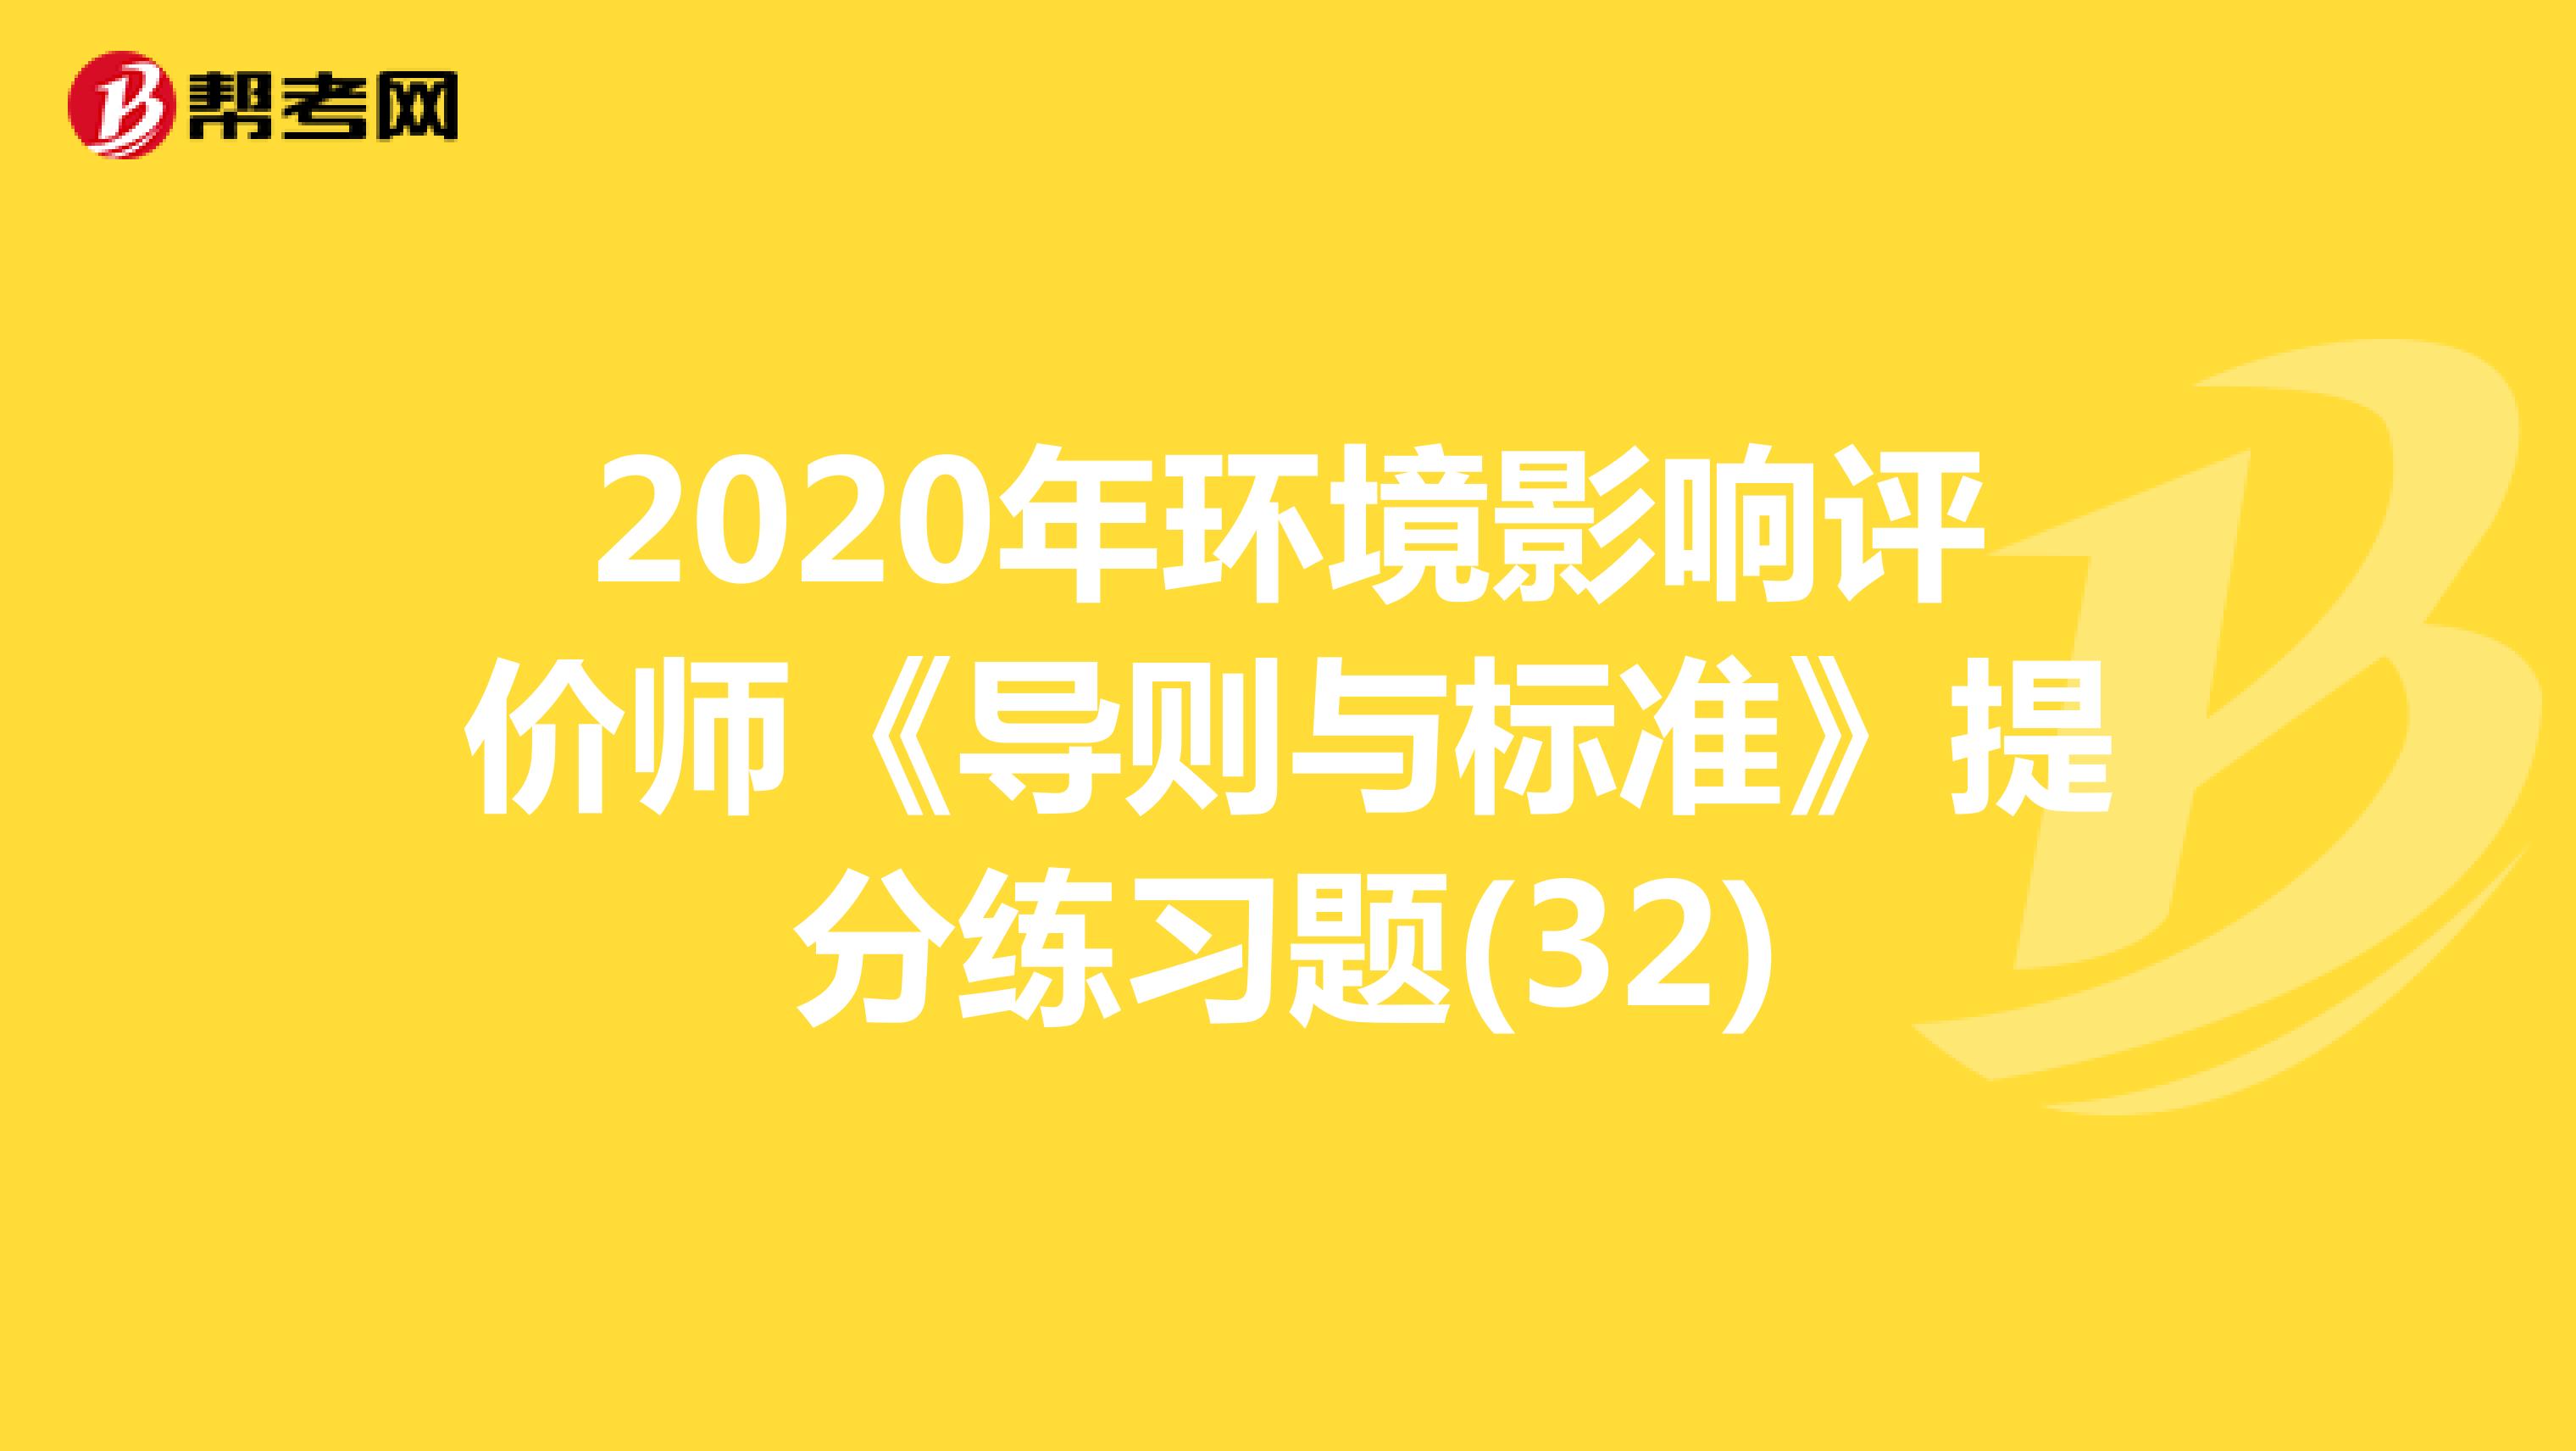 2020年环境影响评价师《导则与标准》提分练习题(32)